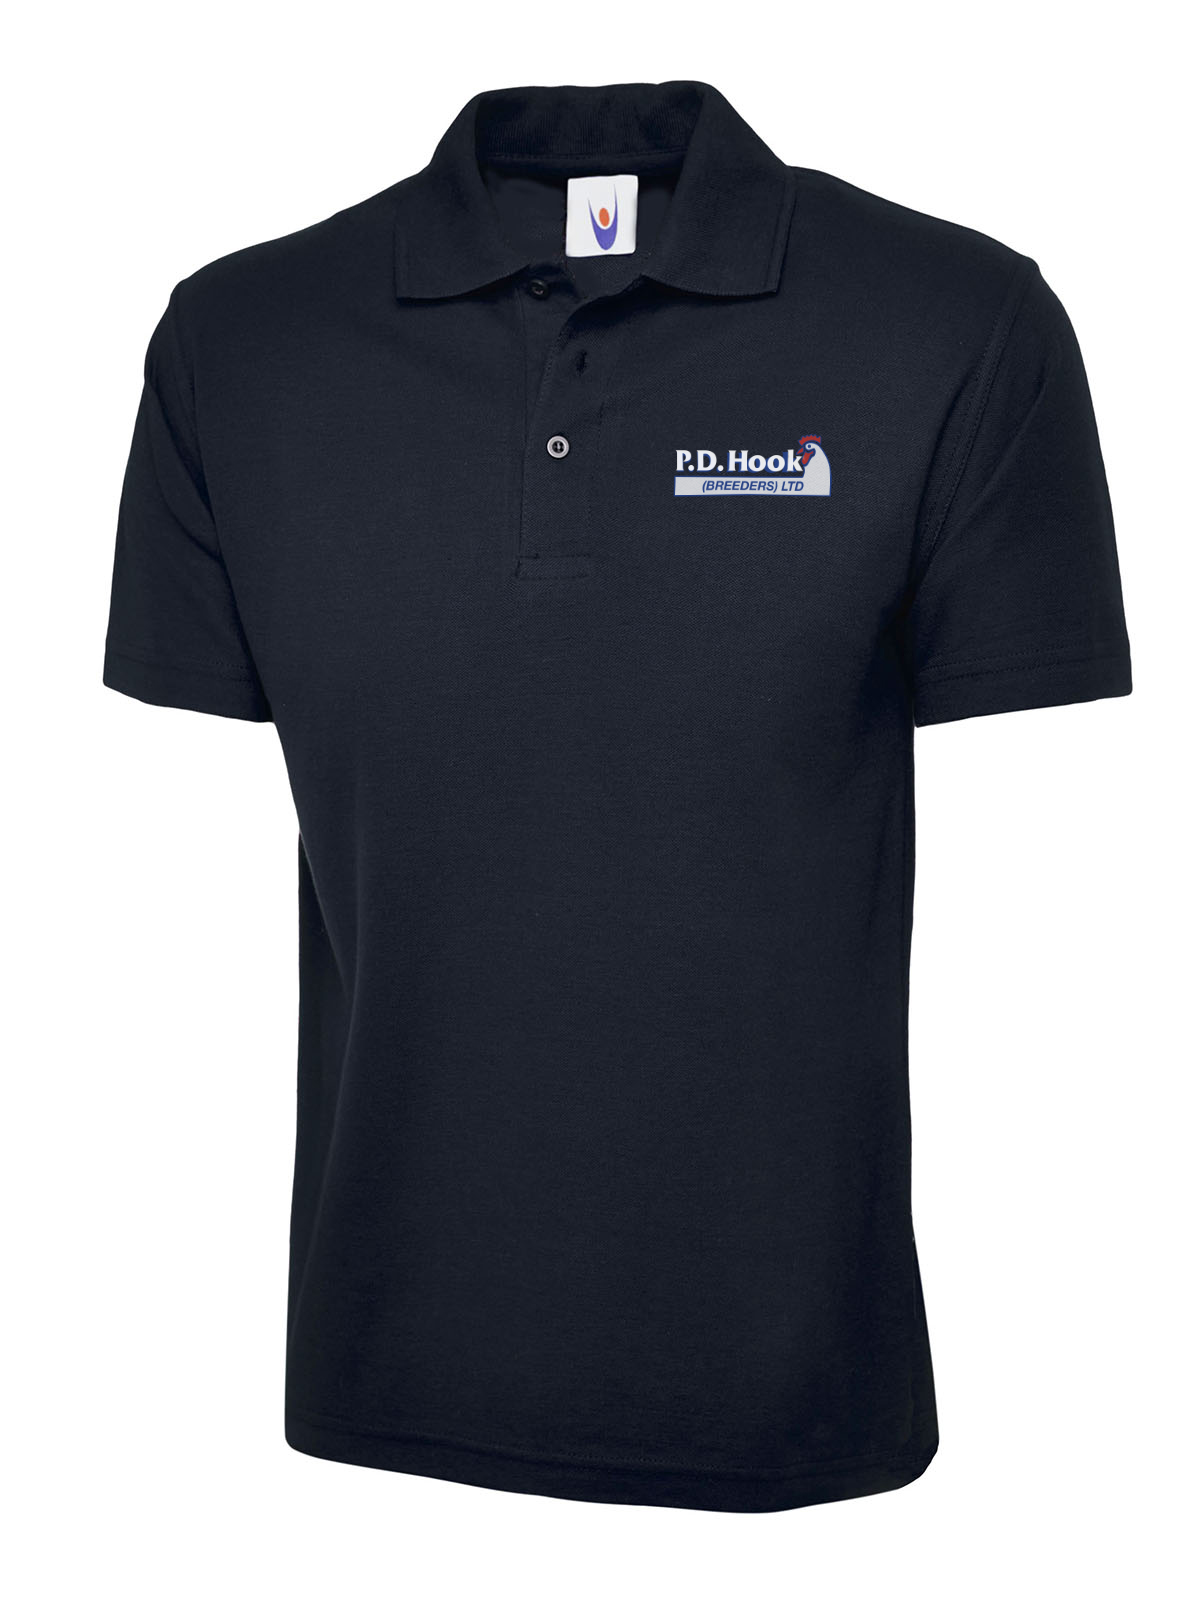 P D Hook (Breeders) Ltd - Poloshirt, Navy - Size 3XL